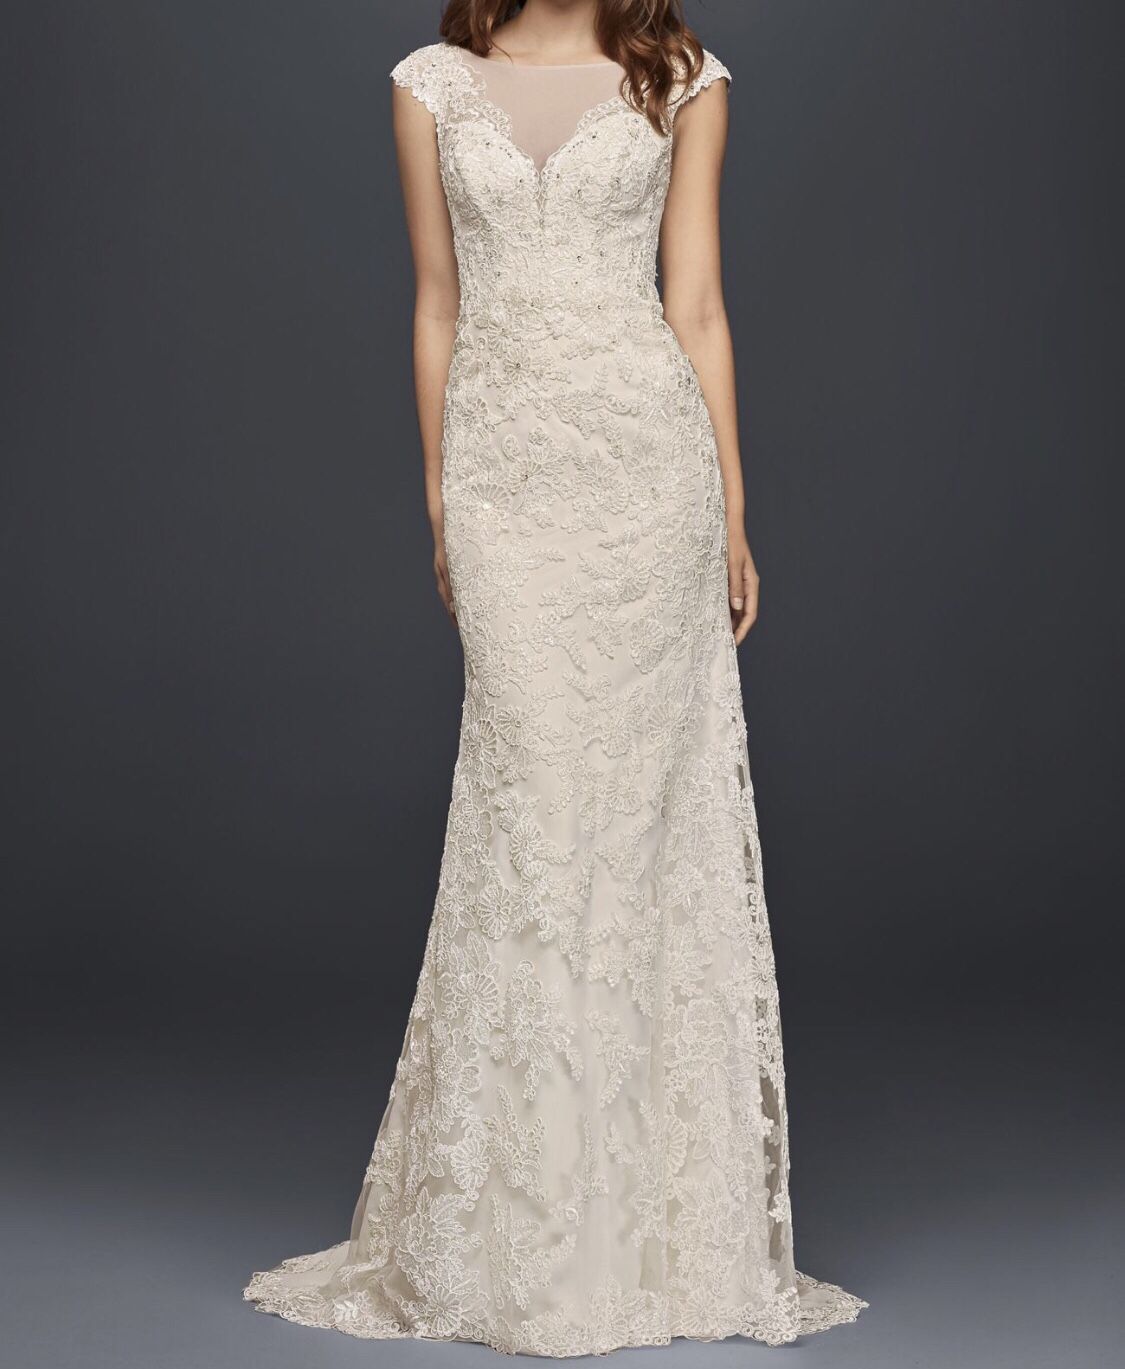 Sleeveless Ivory Lace Sheath Wedding Dress